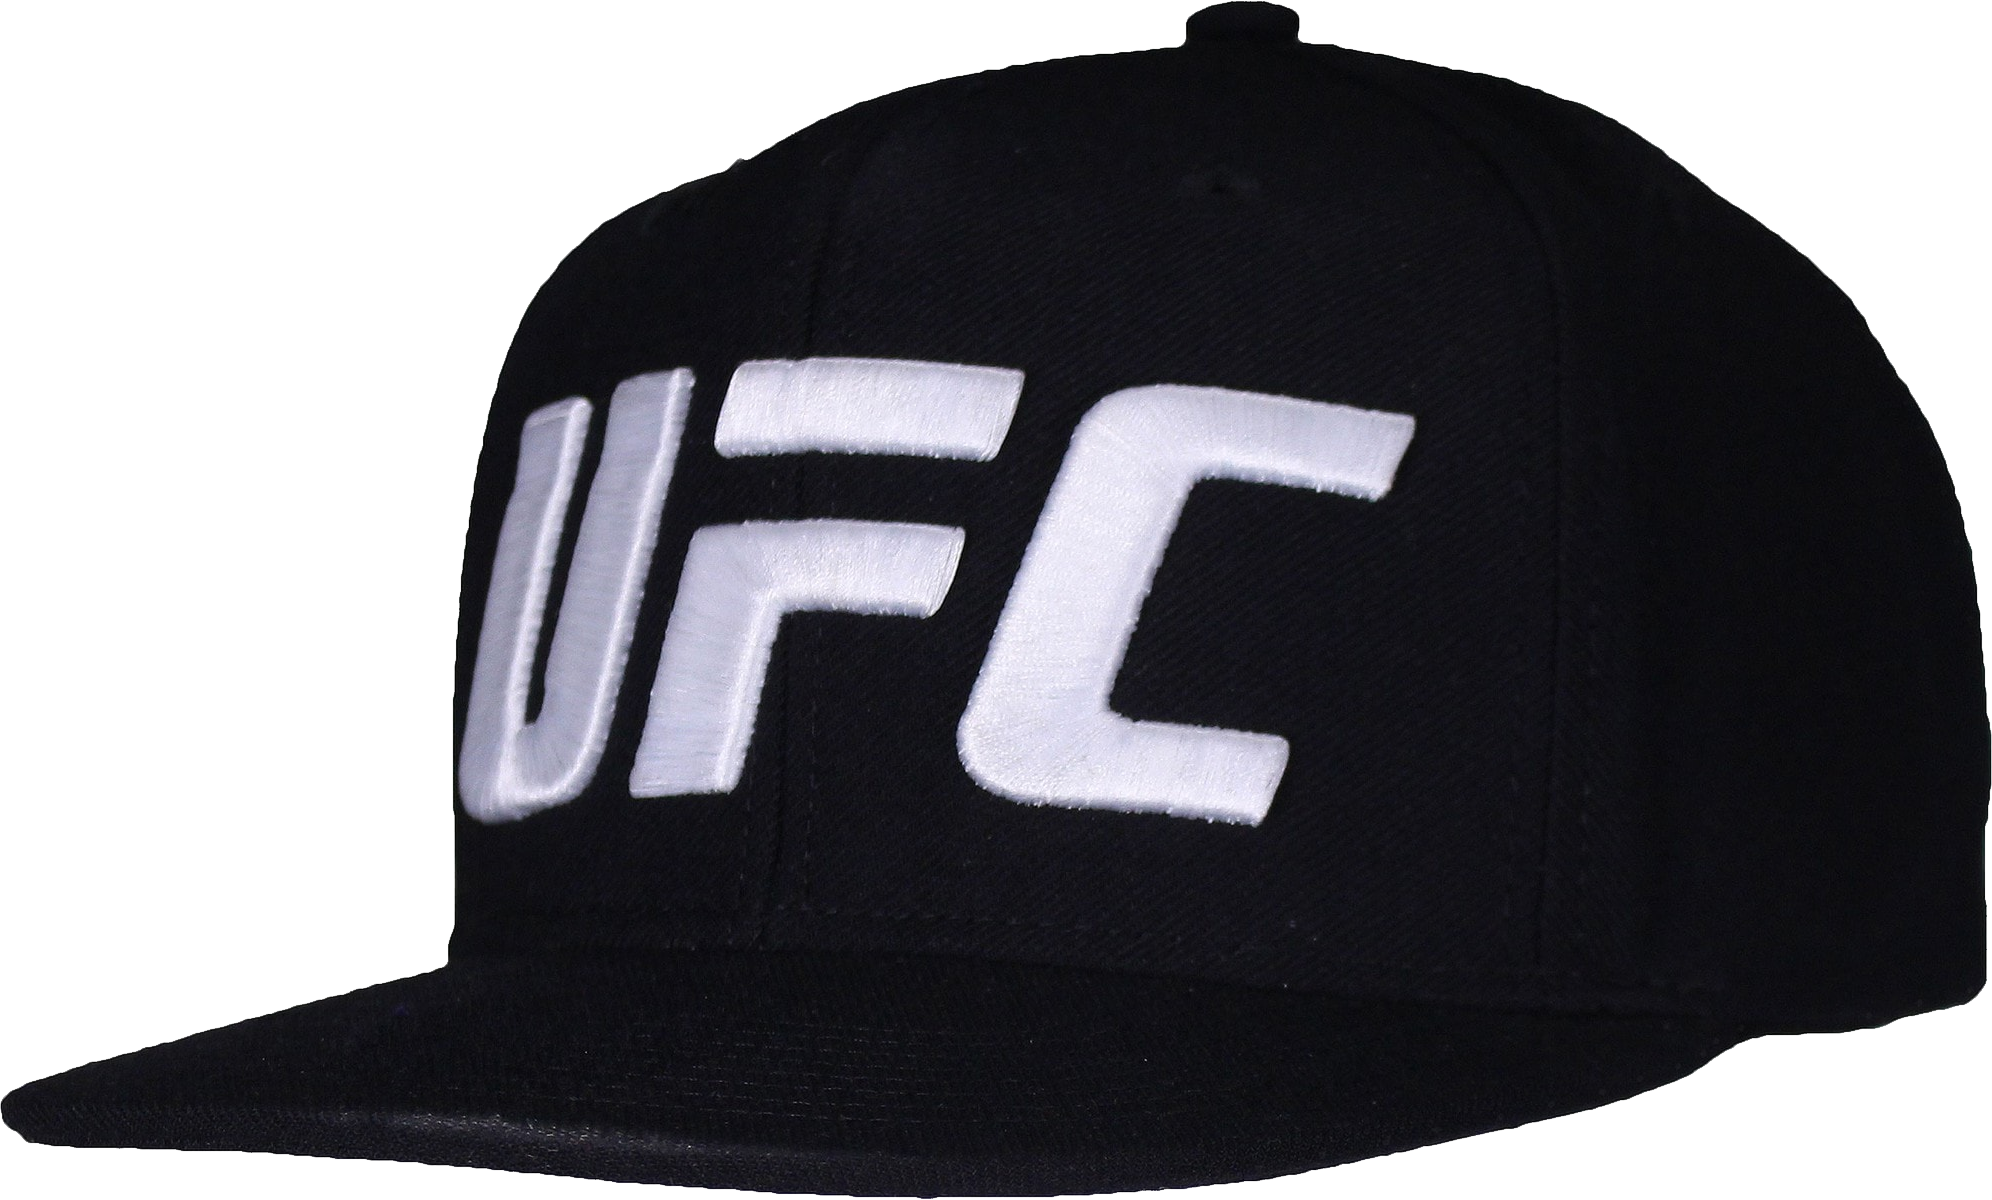 UFC Uneingeschränkter gemischter Kampf